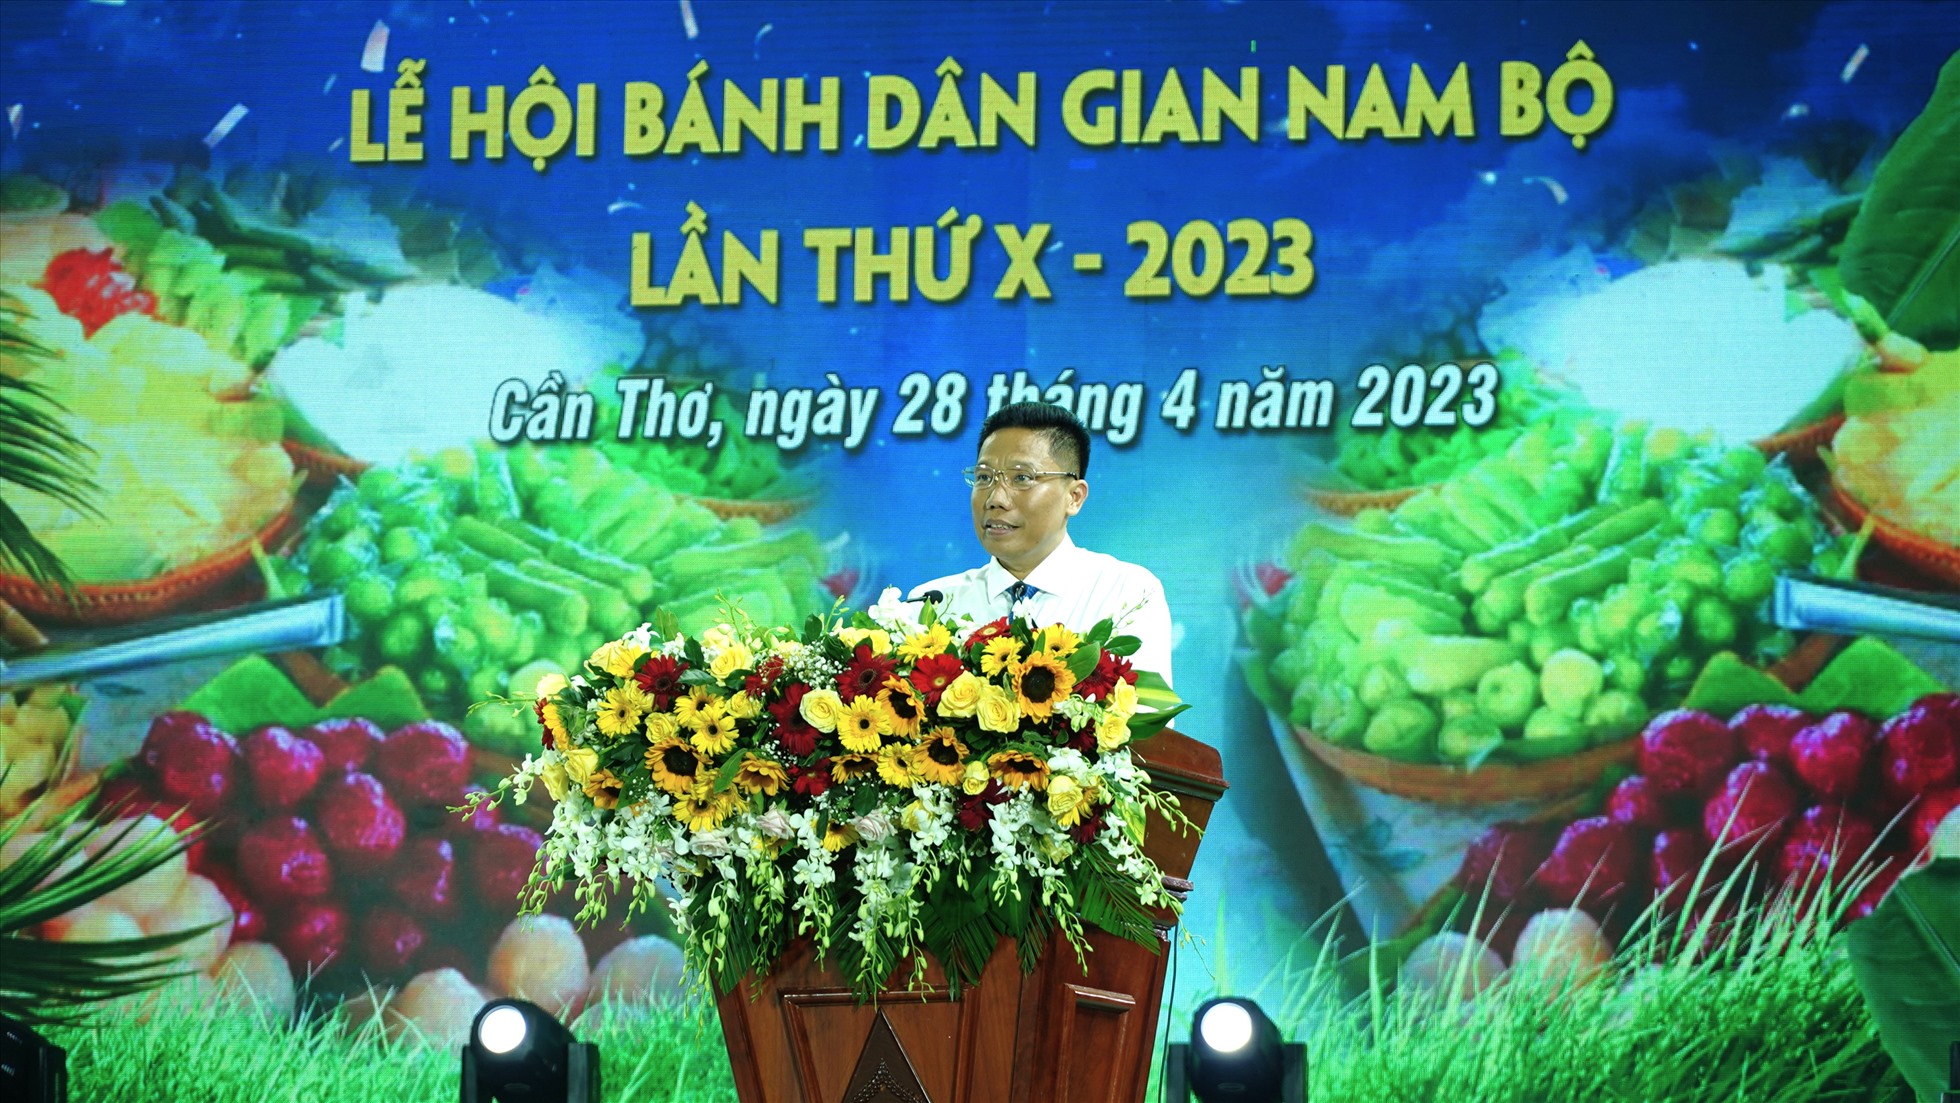 Ông Nguyễn Thực Hiện – Phó Chủ tịch UBND TP Cần Thơ phát biểu tại lễ khai mạc. Ảnh: Tạ Quang